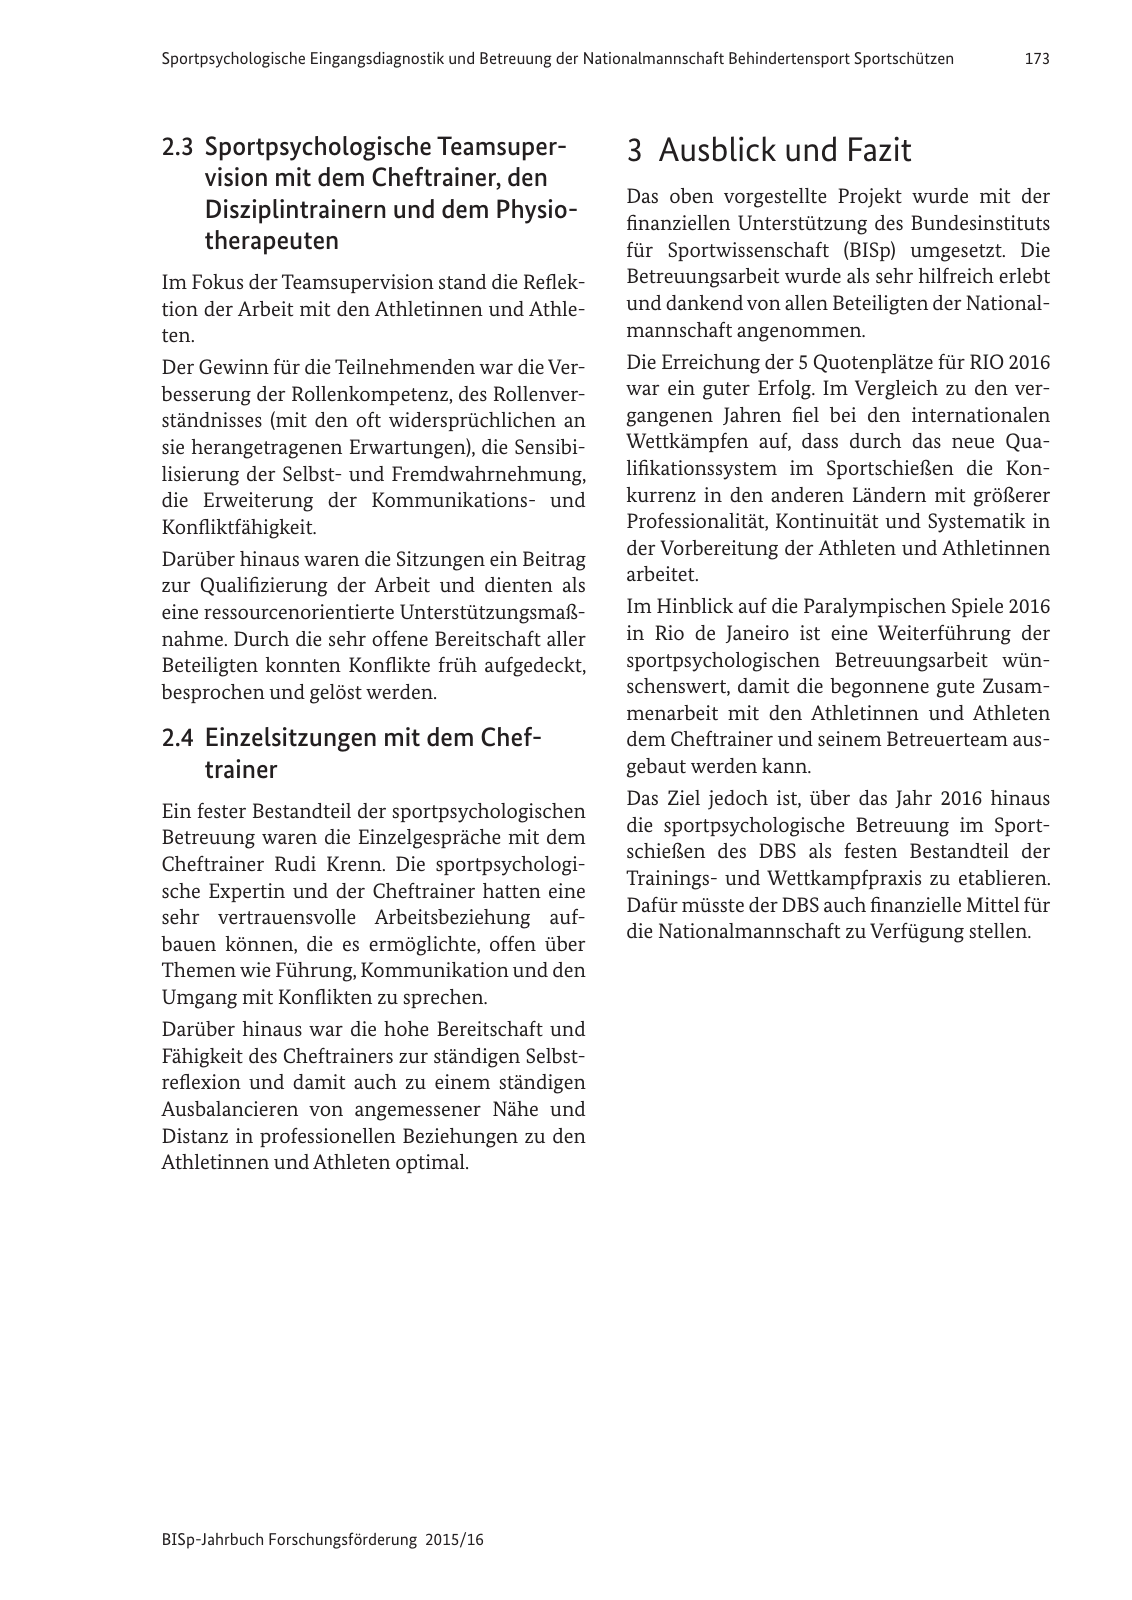 Vorschau BISp-Jahrbuch Forschungsförderung 2015/16 Seite 175